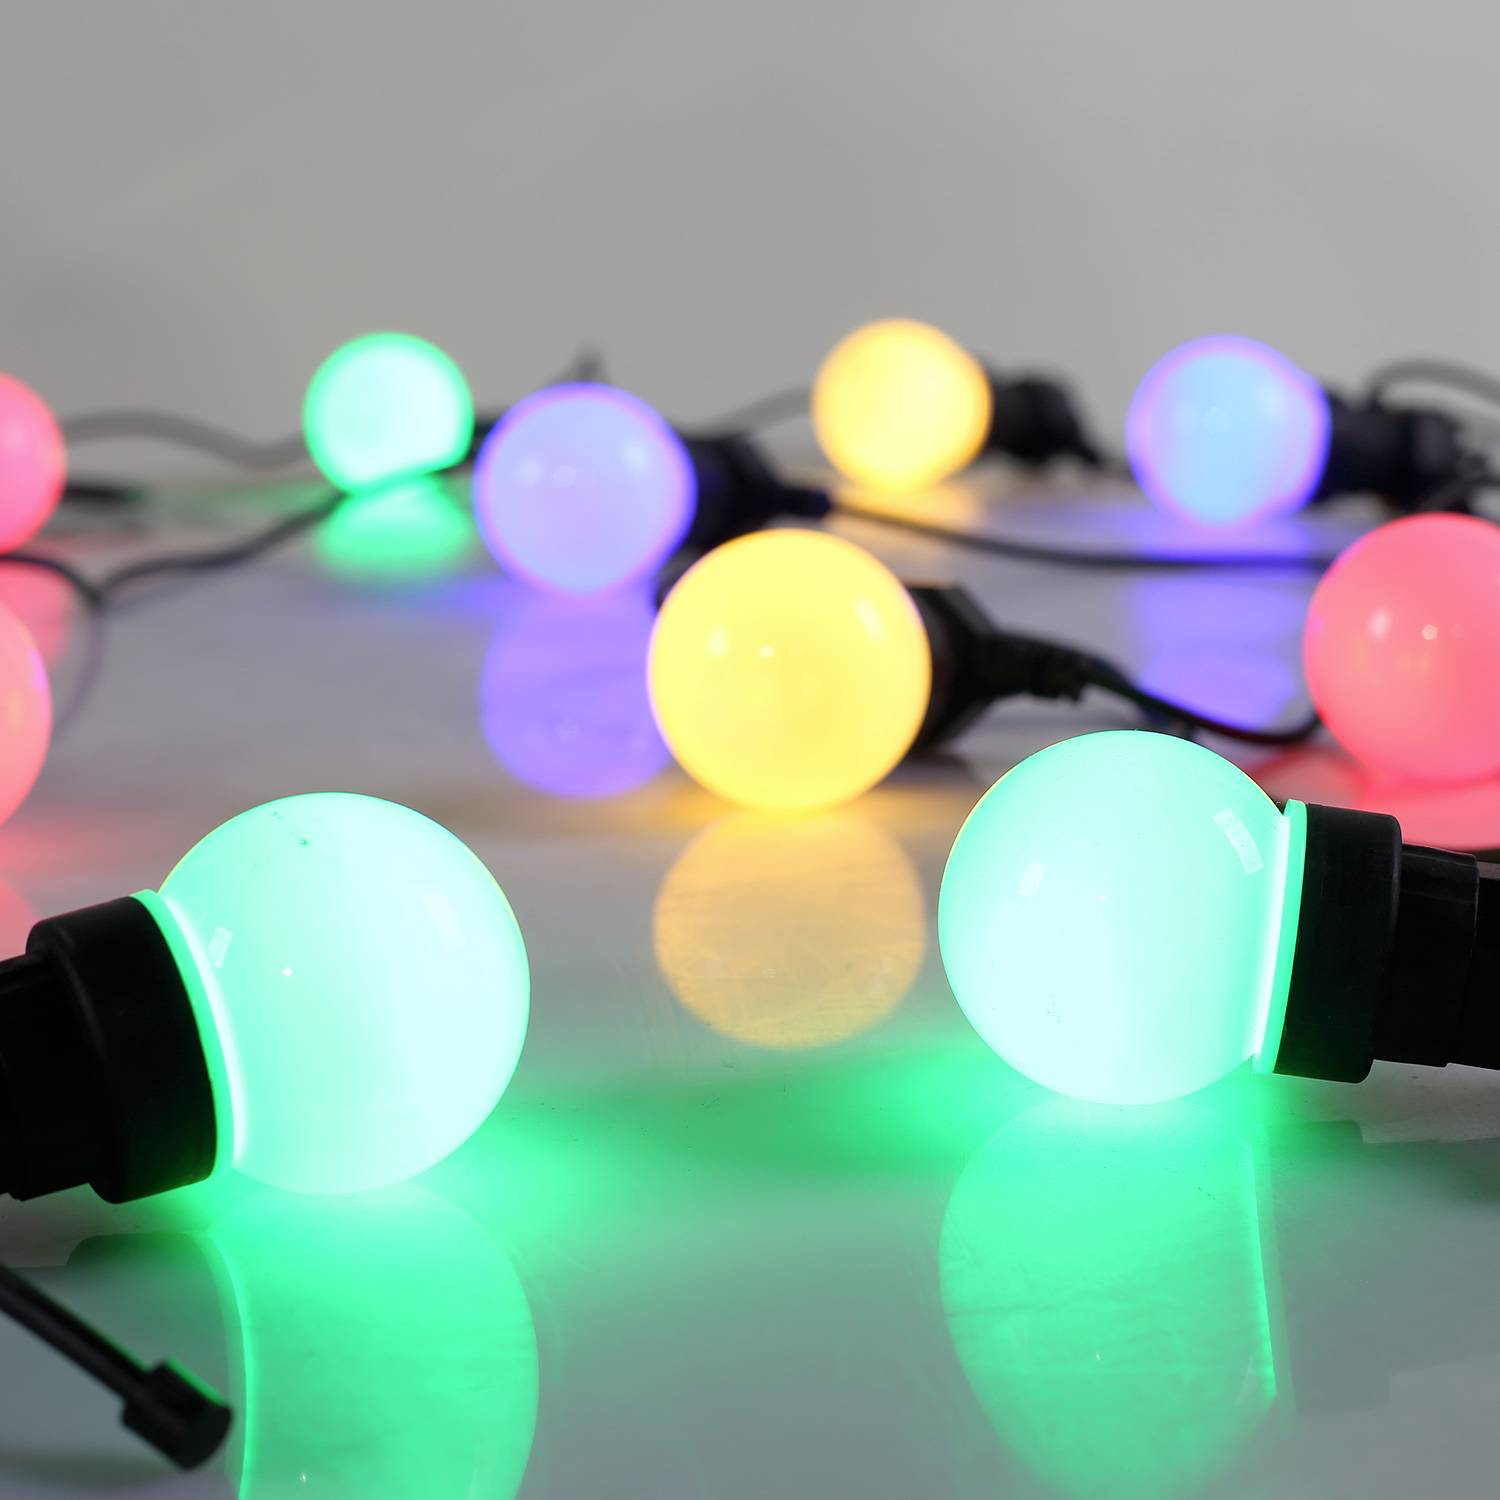 HERACLES - Kerst lichtslinger voor buiten met 10 multicolour lampen, 50 LED's, op batterijen, timerfunctie, 8 modi, 4,5m lang Photo5